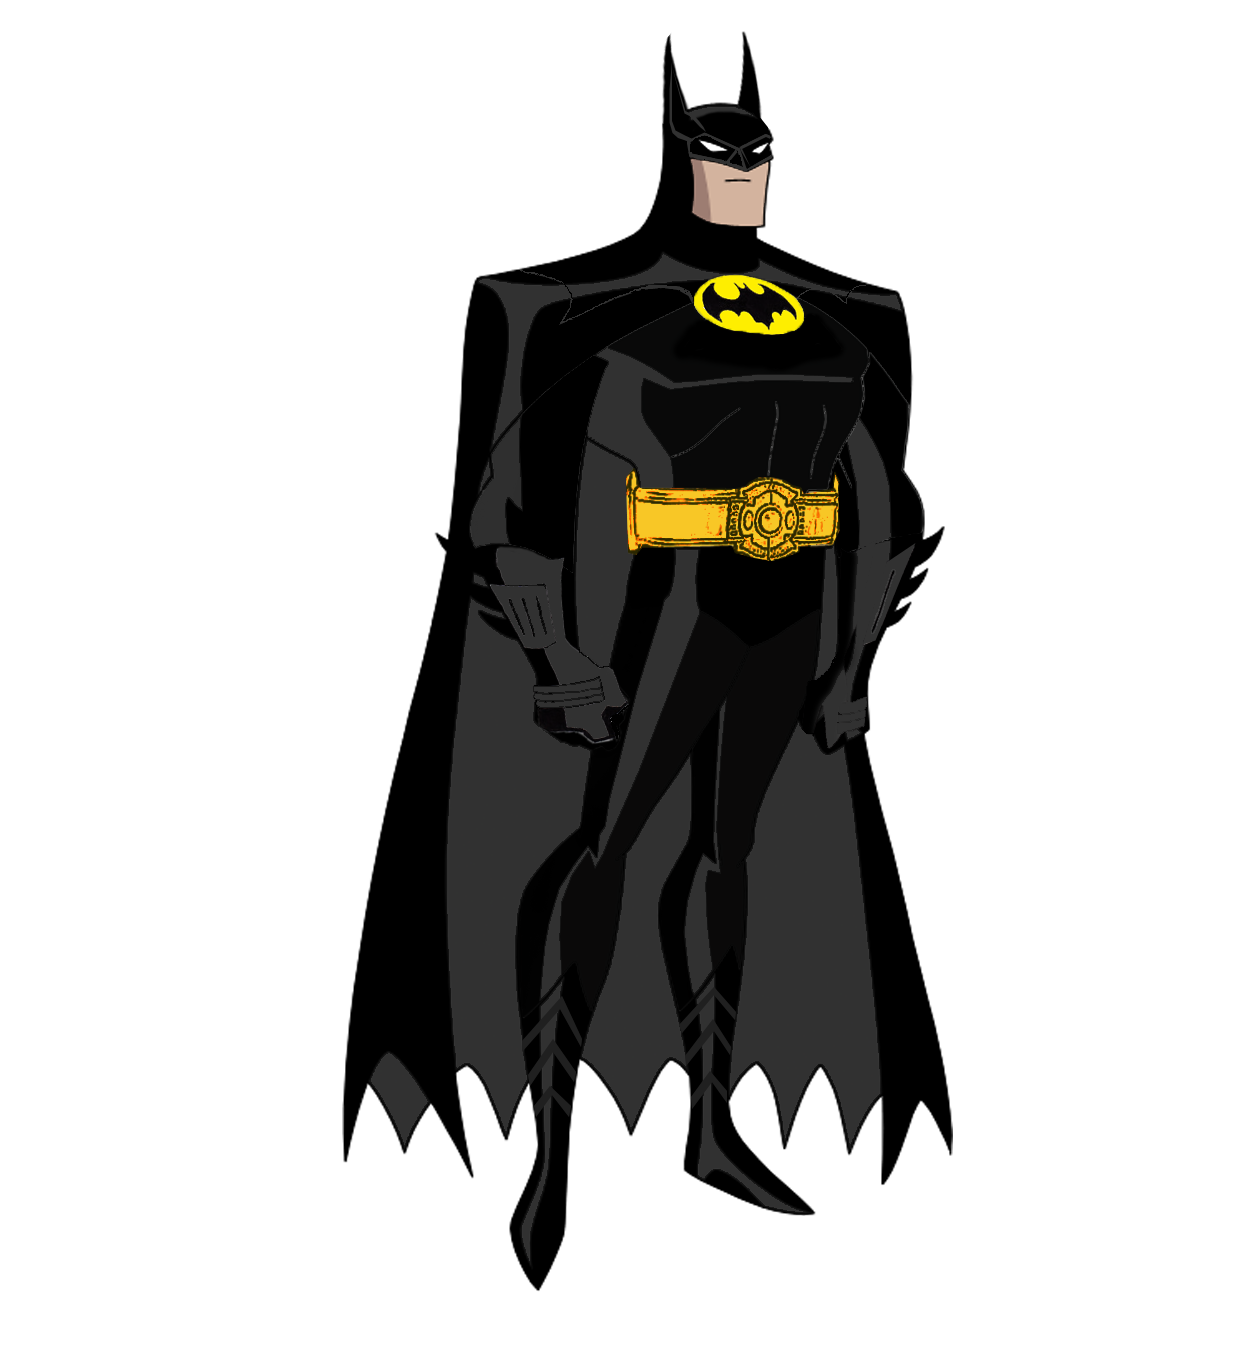 Batman 1989 Images - KibrisPDR